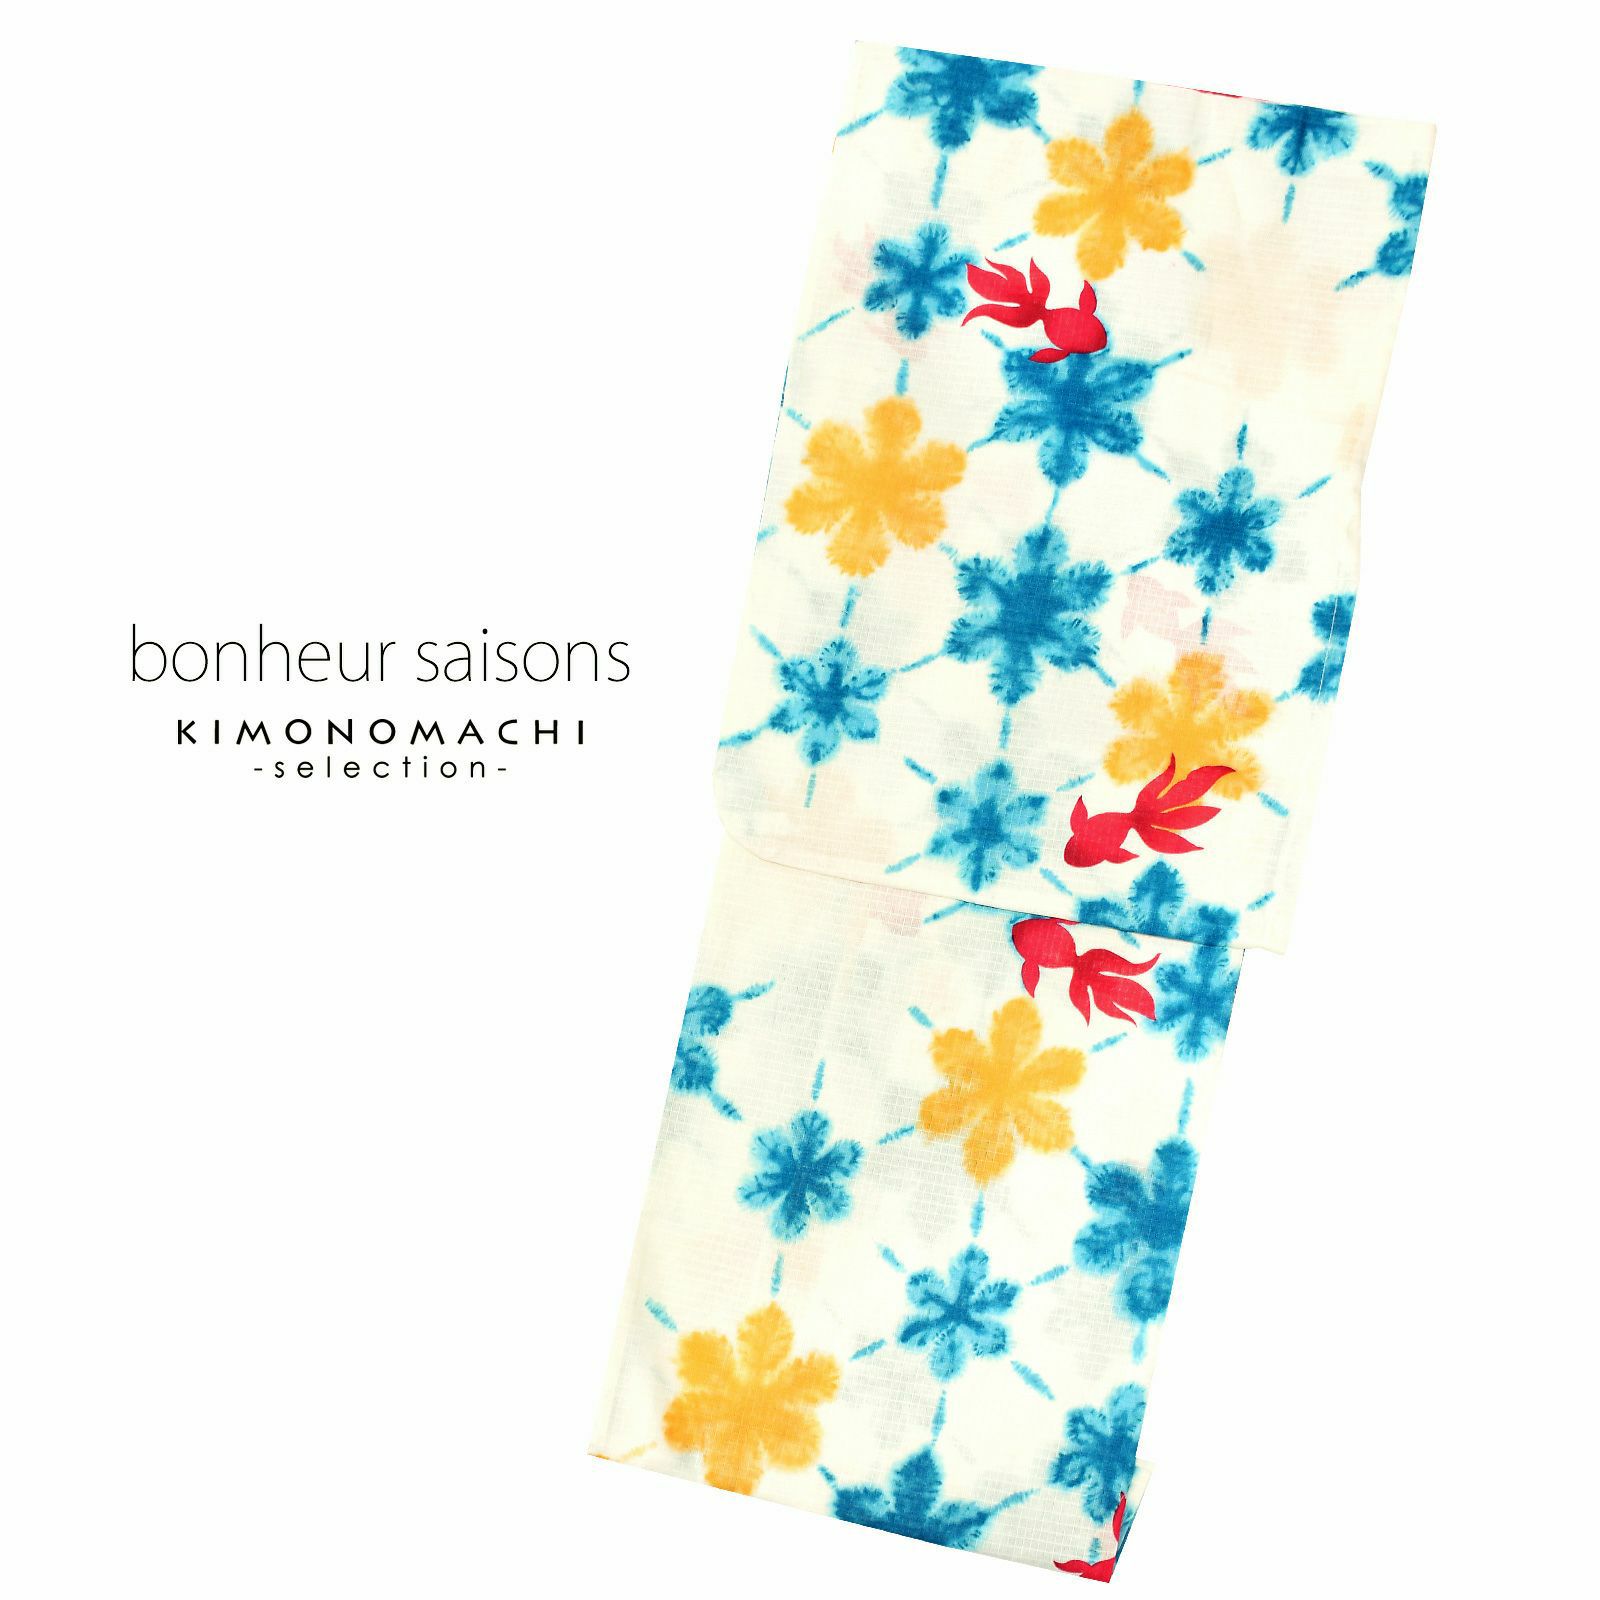 bonheur saisons ブランド浴衣単品 「金魚 雪花絞り風 淡いクリーム